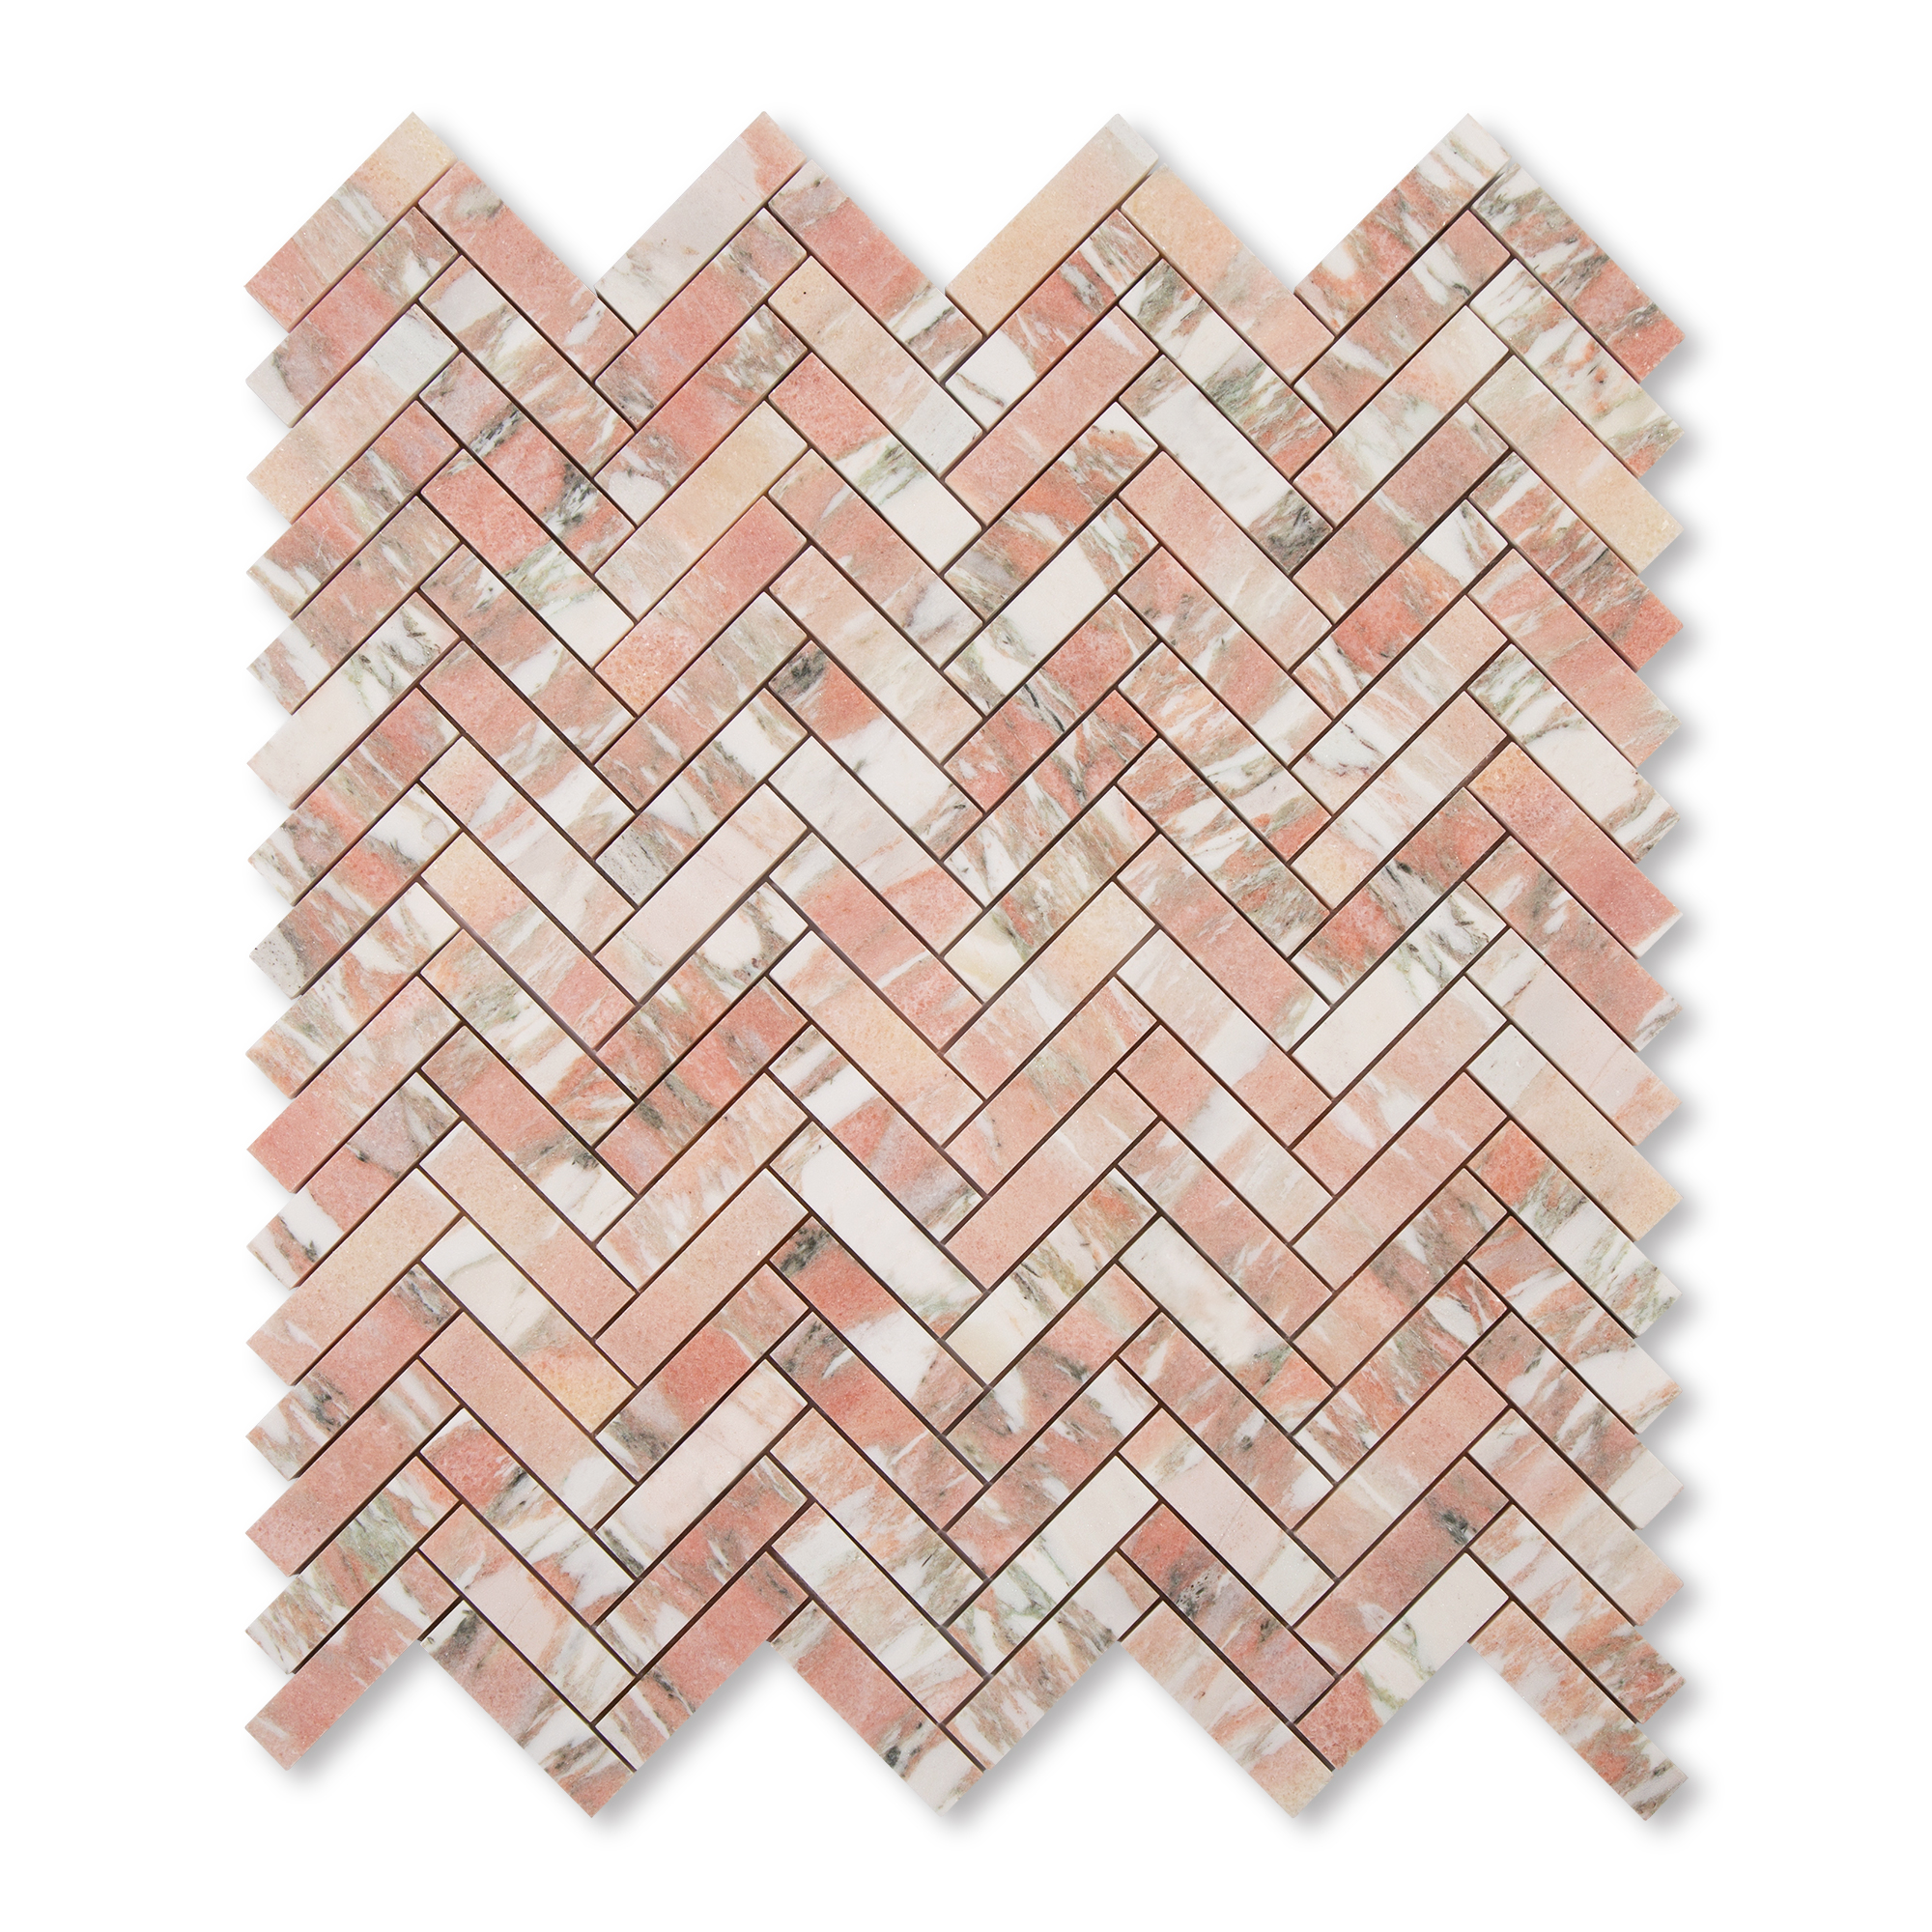 Royal Beige Honed Herringbone Marble Mosaic, 12x12x3/8